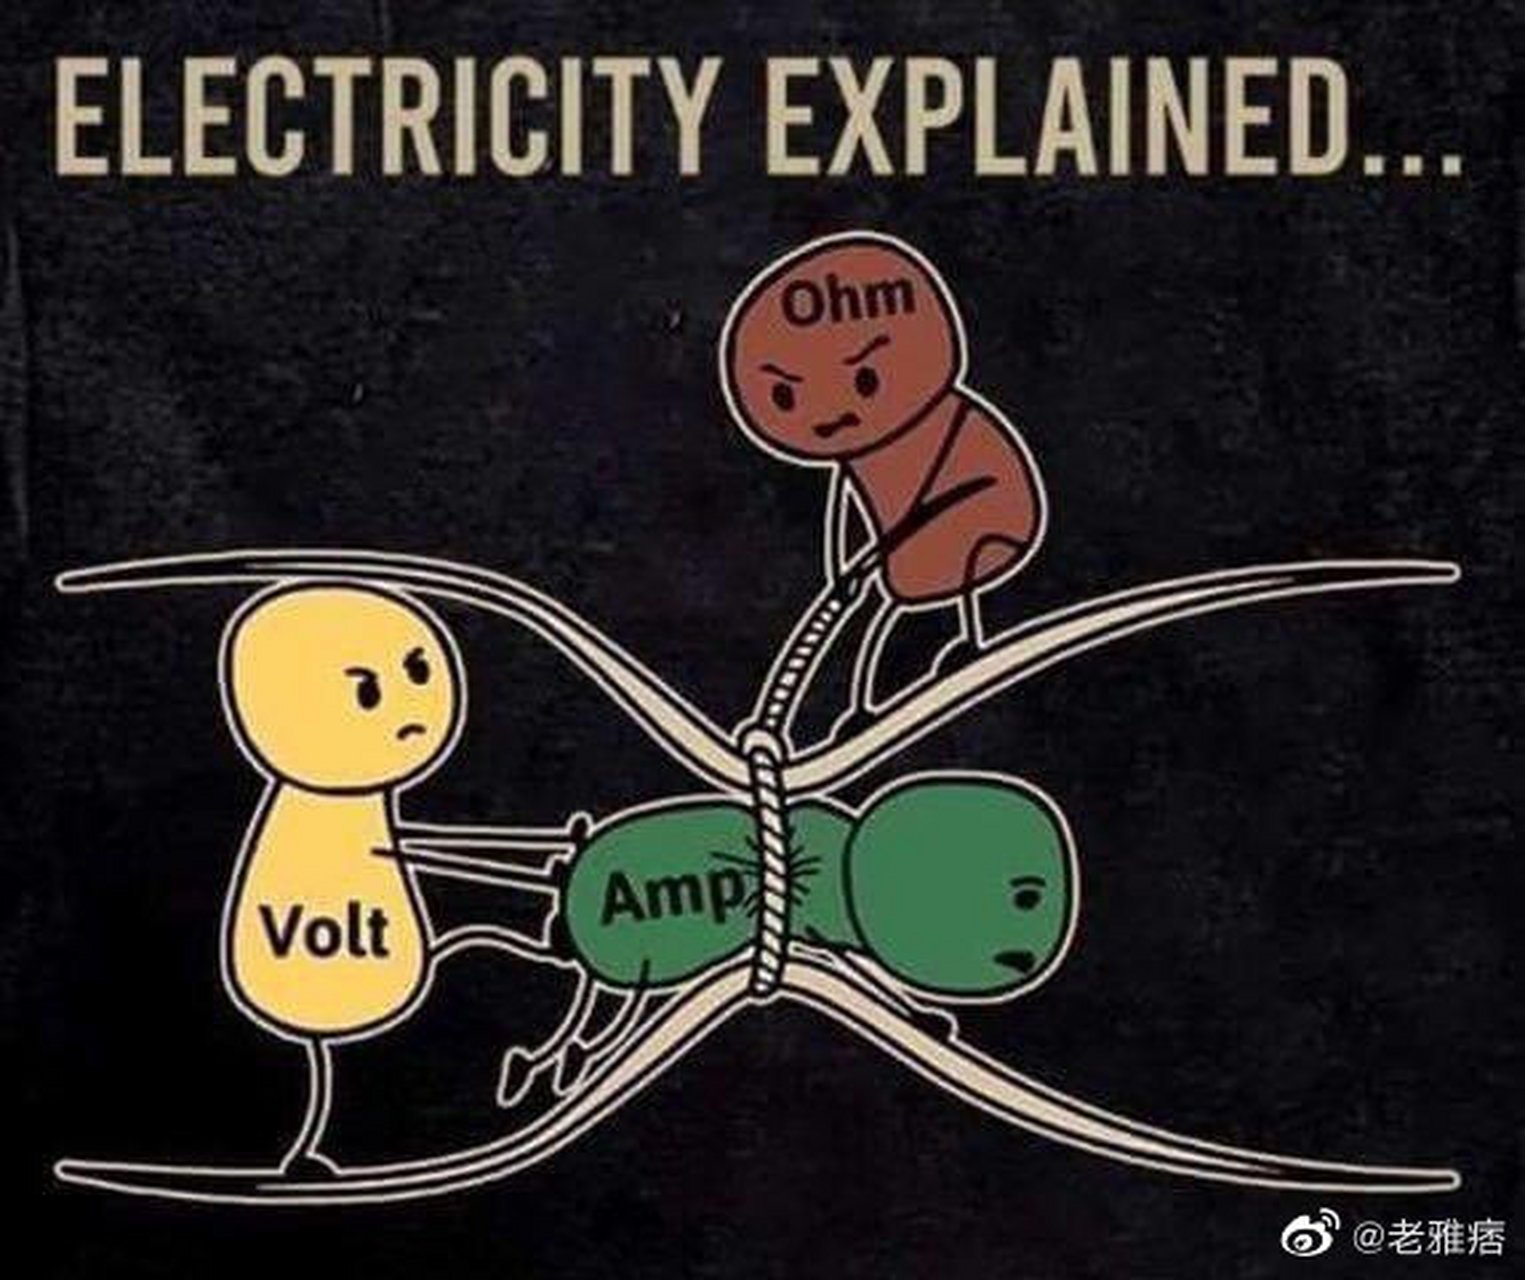 欧姆定律的形象解释: 黄色:电压 绿色:电流 棕色:电阻